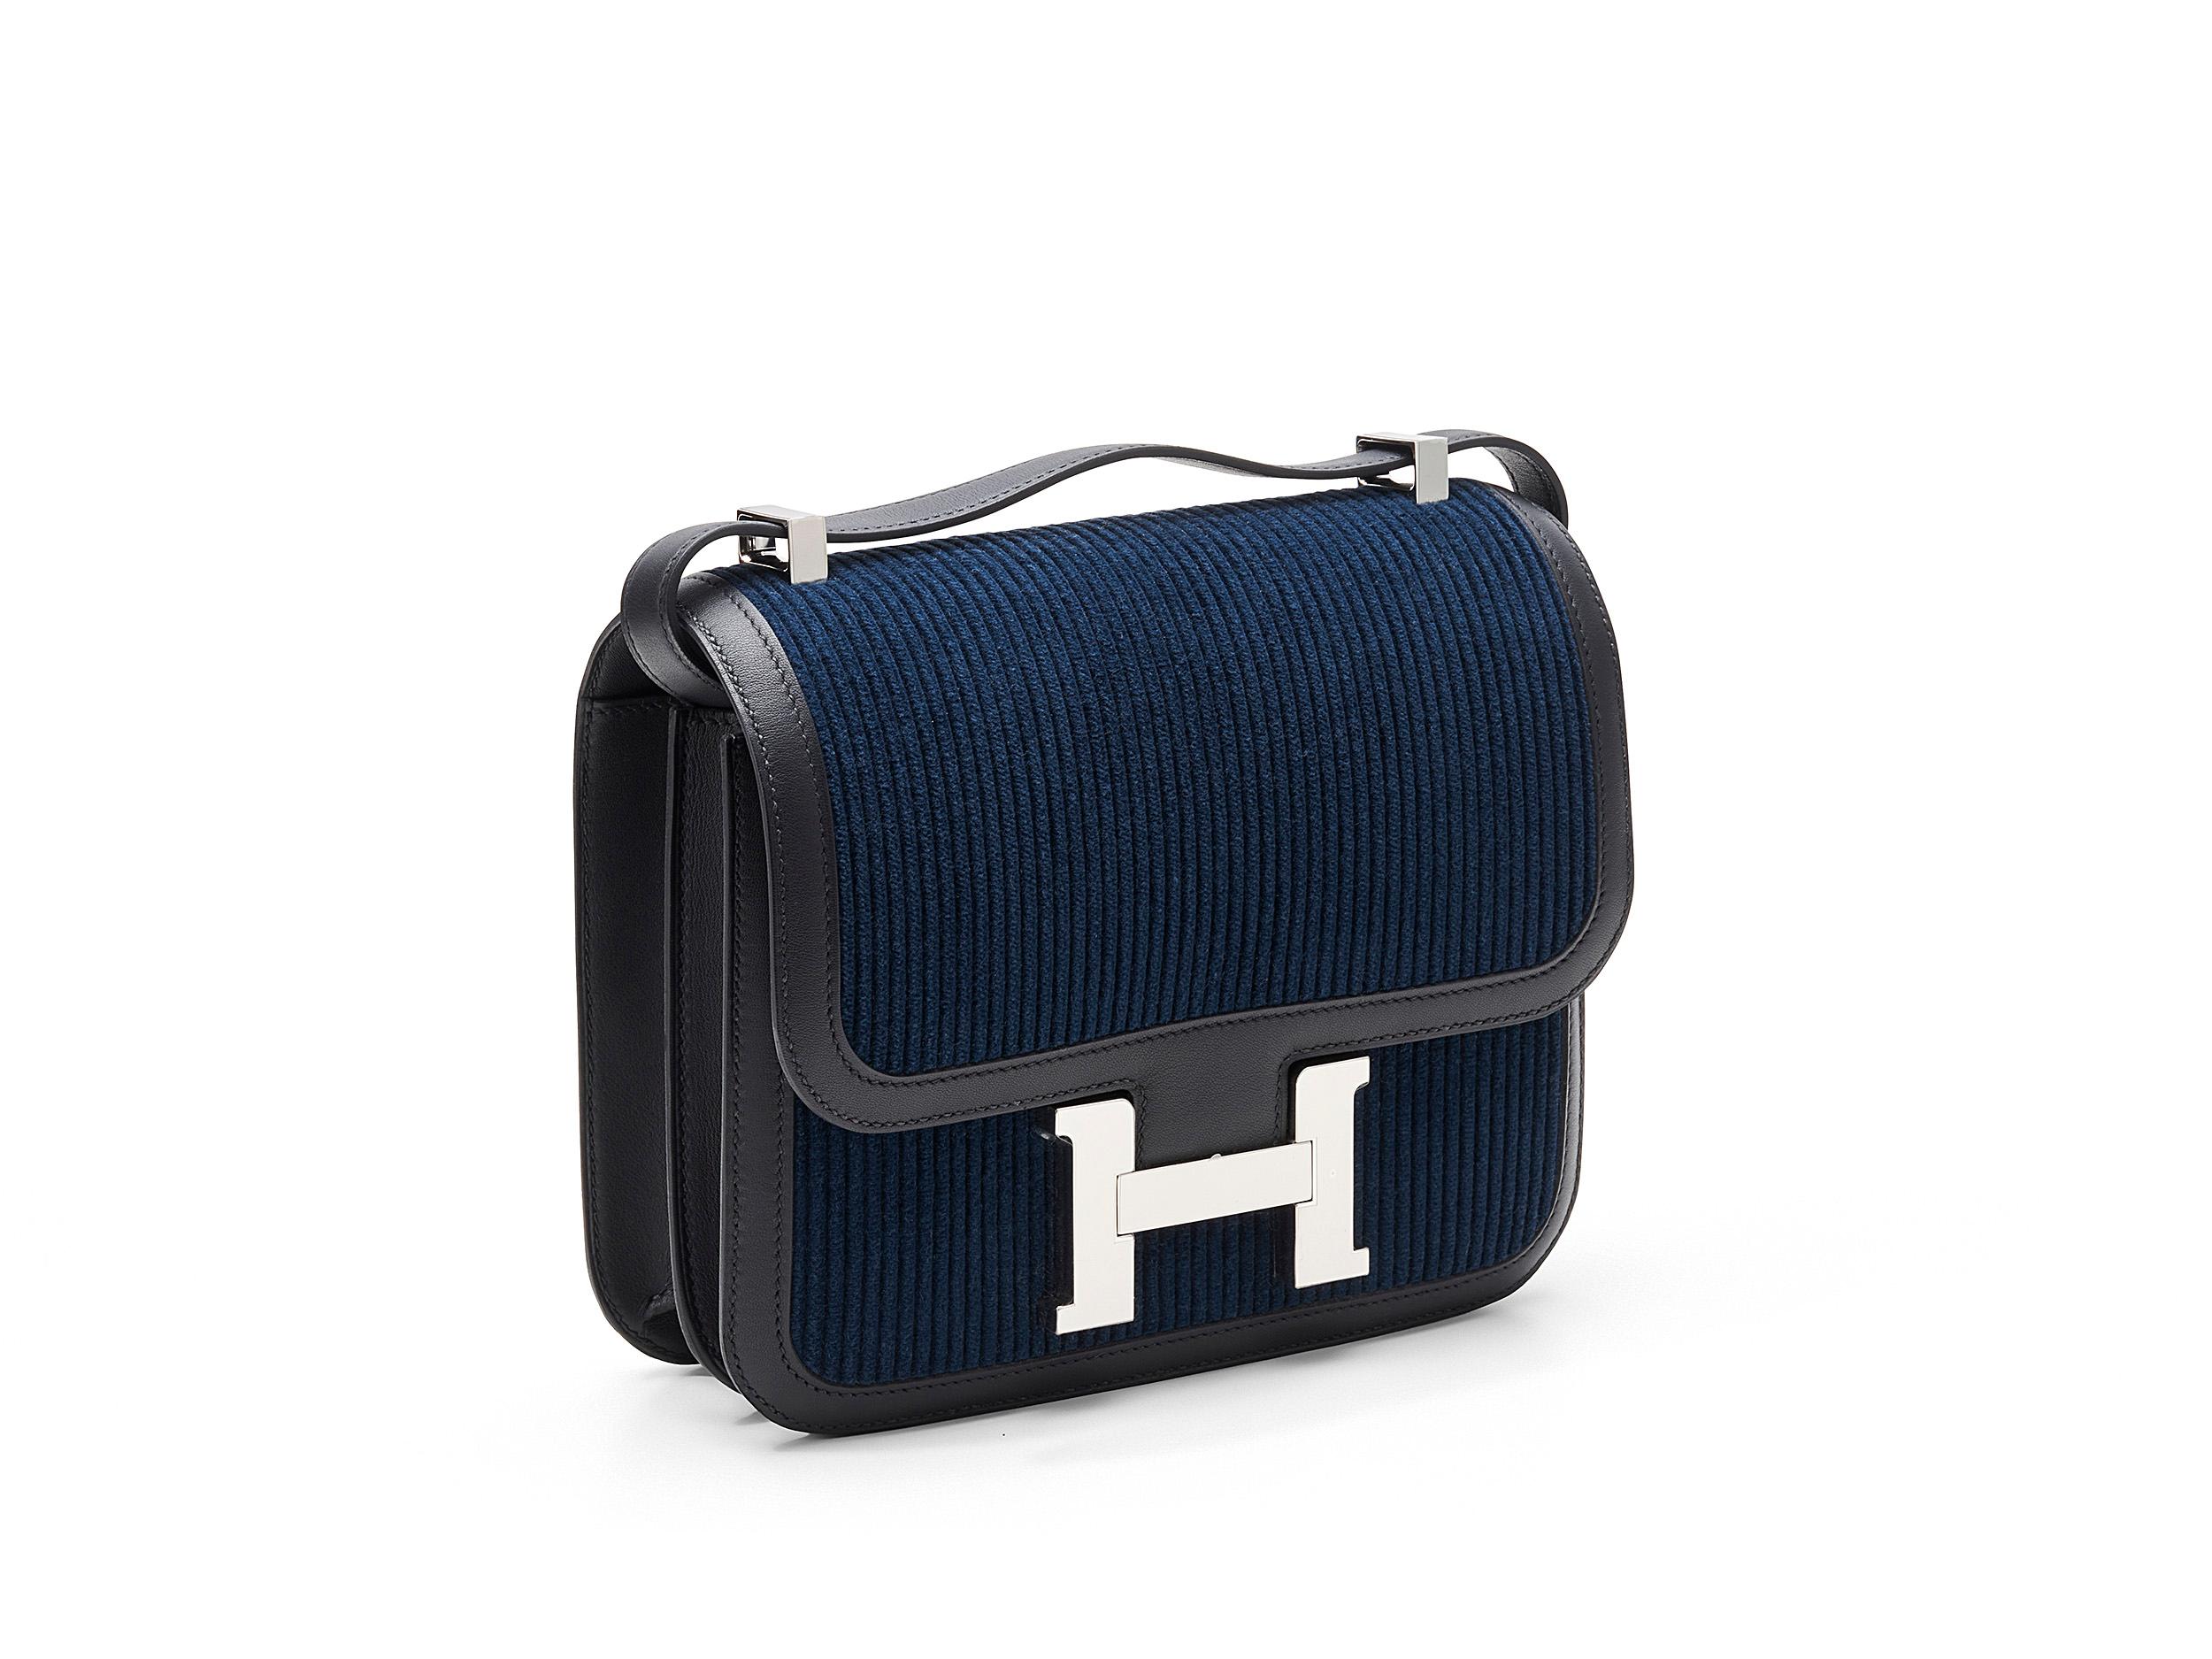 Hermès Constance 24 in Marineblau und Kord mit Palladiumbeschlägen. Diese Tasche ist eine limitierte Auflage, ungetragen und wird als komplettes Set mit dem Originalbeleg geliefert.
Stempel Y (2020) 

